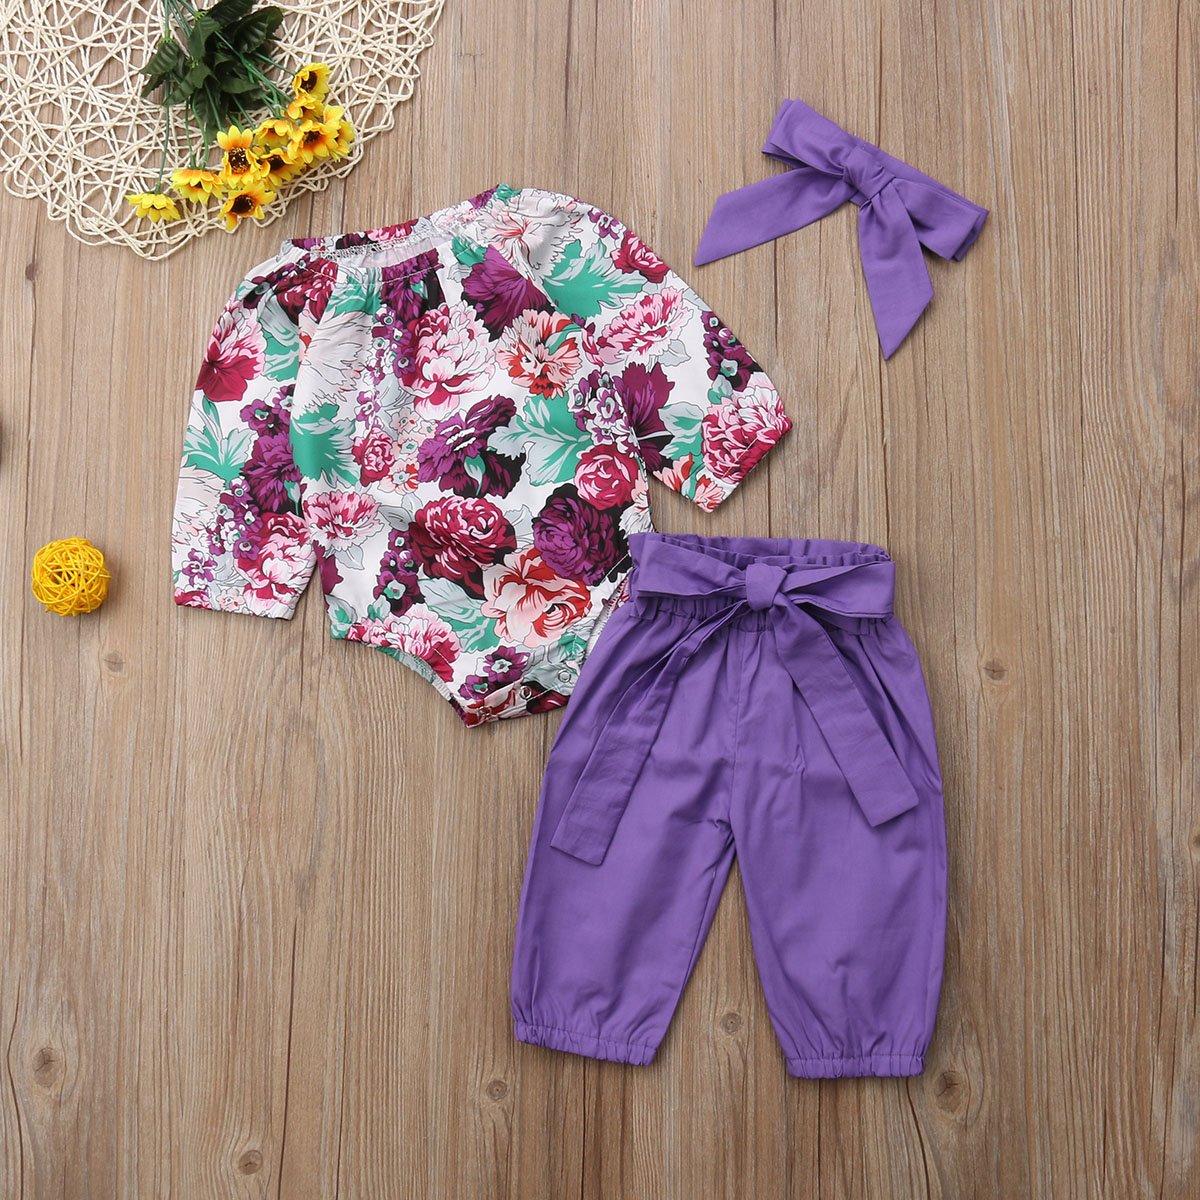 Bébé filles hauts barboteuse pantalon à fleurs Leggings tenue ensemble vêtements